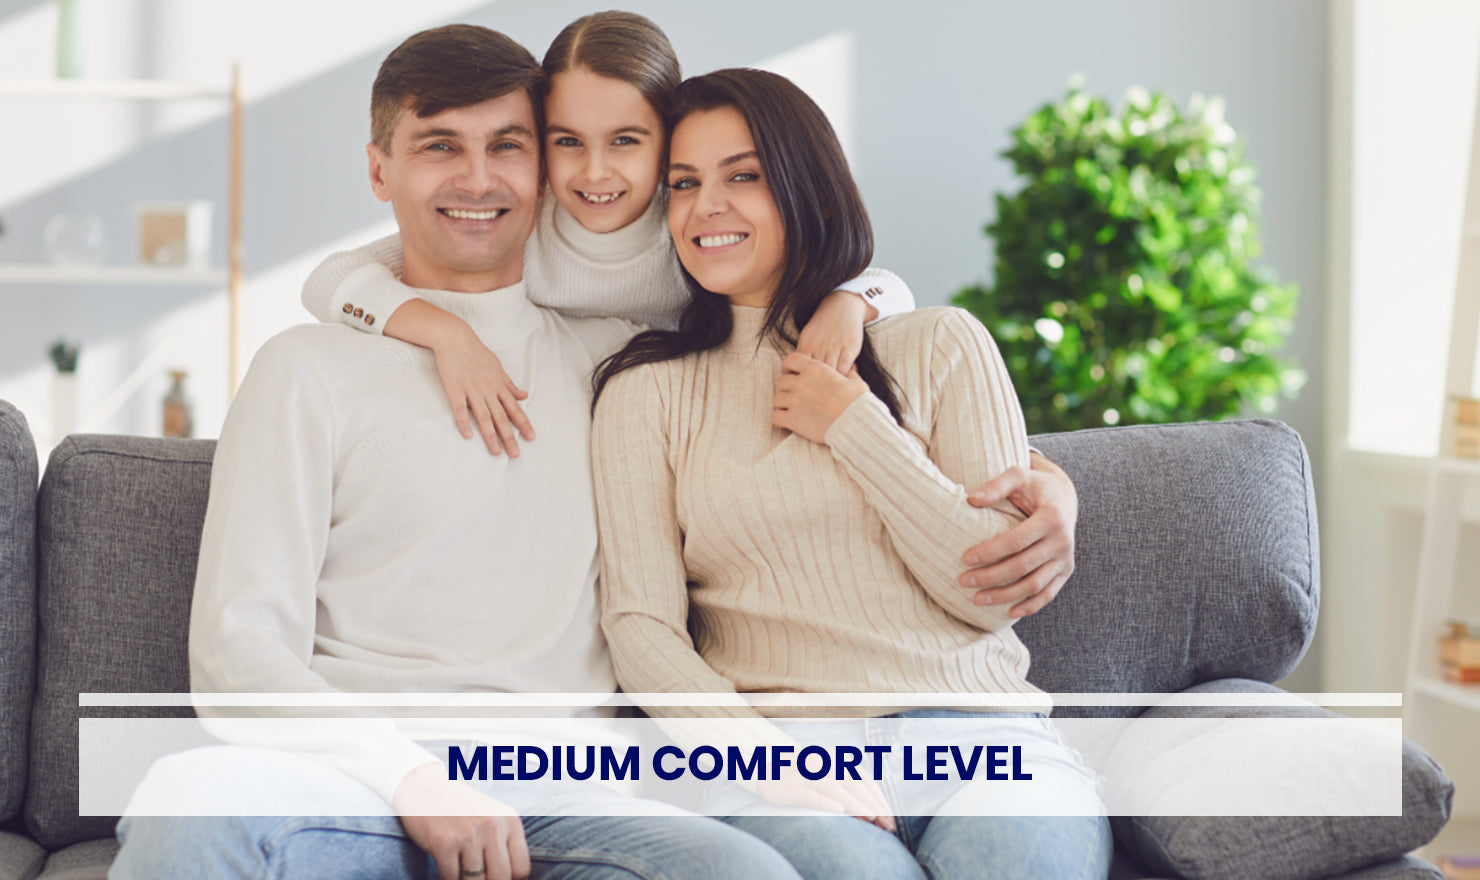 Medium comfort level